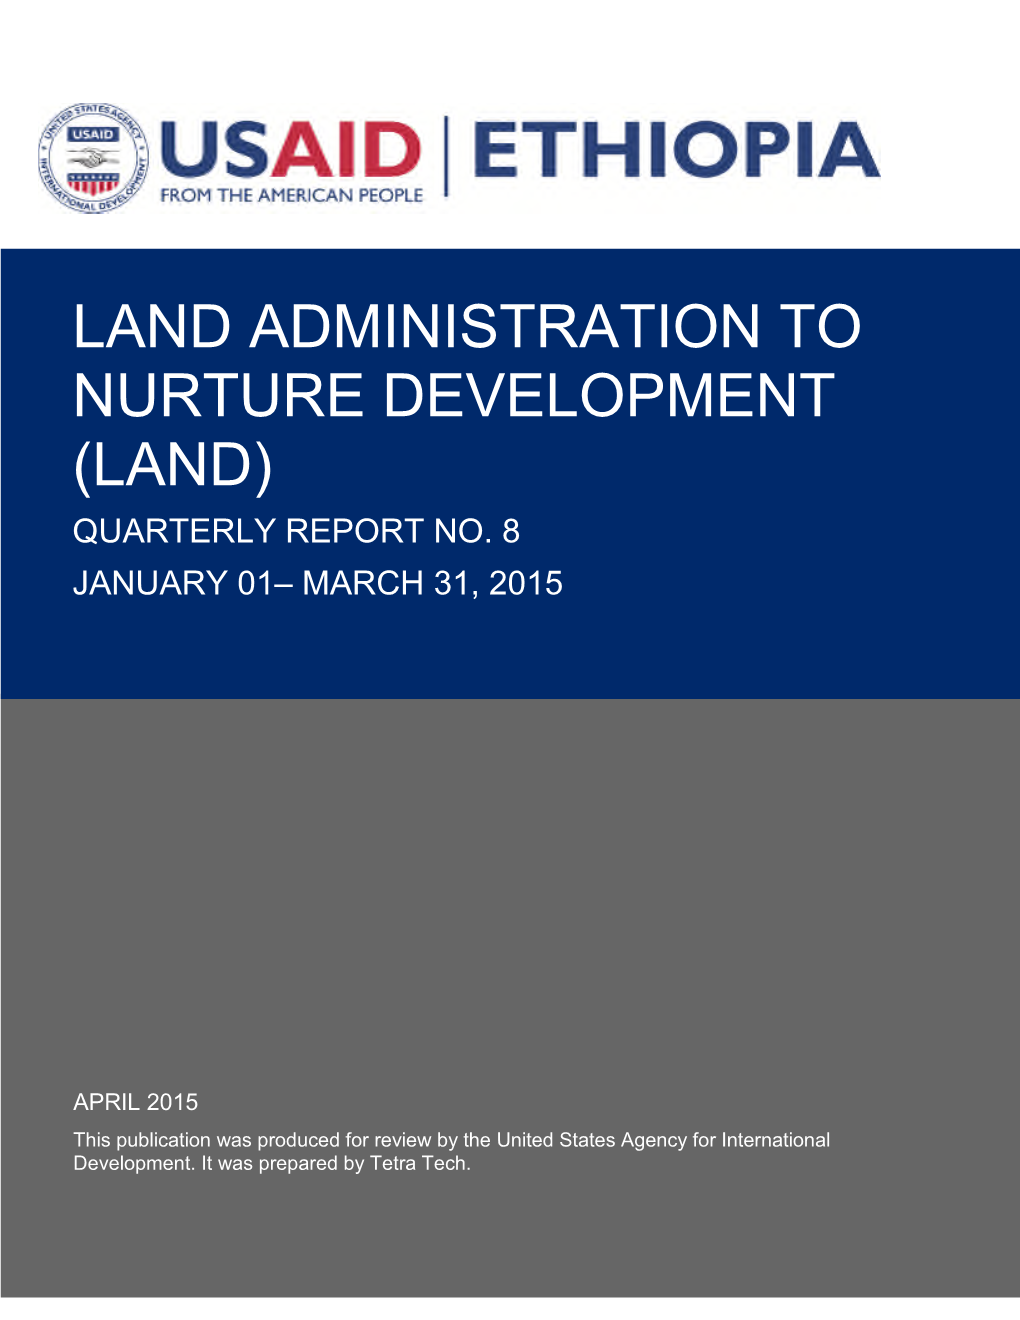 Ethiopia Land Administration to Nurture Development